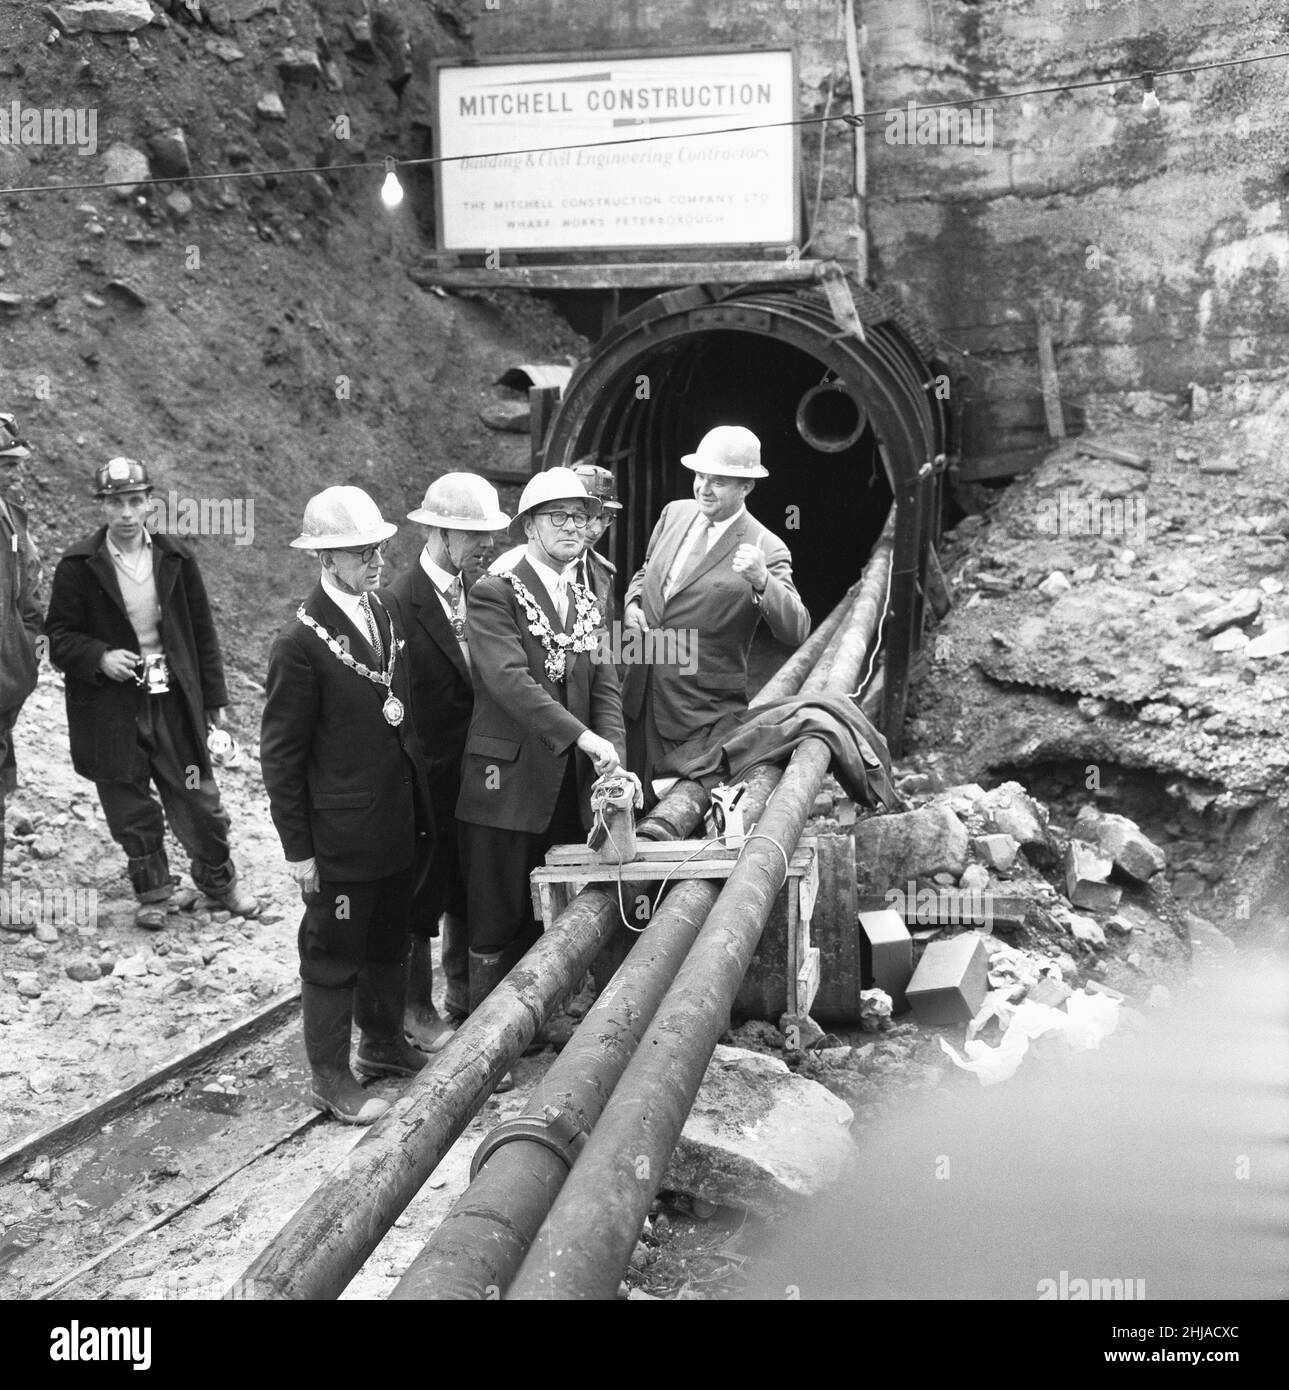 La coupe de 1 140 pieds de haut Manshead Hill a été achevée lorsque le maire de Wakefield, le juge en chef Alderman Nathan Hutchinson, a tiré les deux derniers chefs d'accusation pour compléter le tunnel.24 hommes ont travaillé jour et nuit en coupant le tunnel, 8000 pieds de long, souvent à la taille profondément dans l'eau, les conditions ont été les plus difficiles, mais les hommes ont applaudi comme ils ont été félicités par le maire.La bogie qui l'a amené à 4 000 pieds dans le tunnel est sortie de la piste lors du trajet de retour, de sorte que M. Hutchinson a dû barboer à travers l'eau qui s'écoulait dans le tunnel.Le tunnel garantit une alimentation en eau suffisante pour faire des péps Banque D'Images